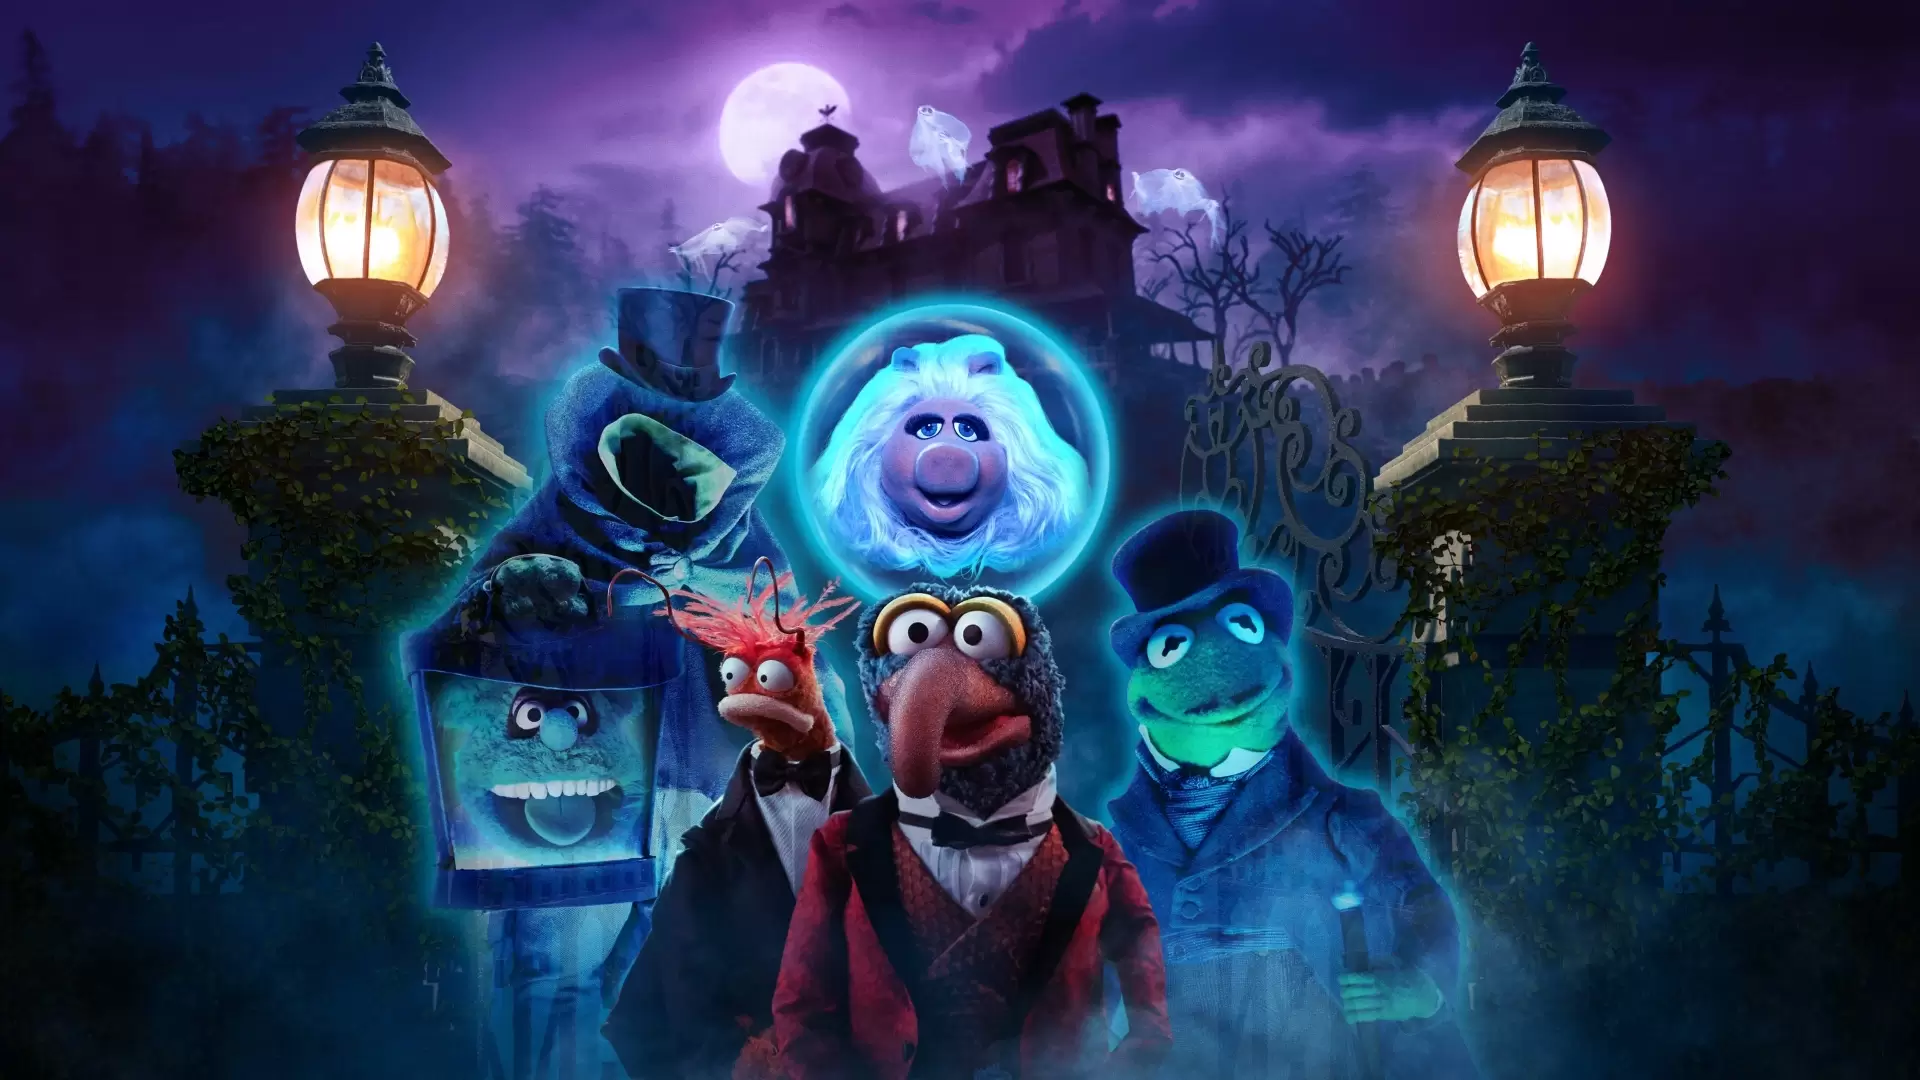 دانلود فیلم Muppets Haunted Mansion 2021 با زیرنویس فارسی و تماشای آنلاین